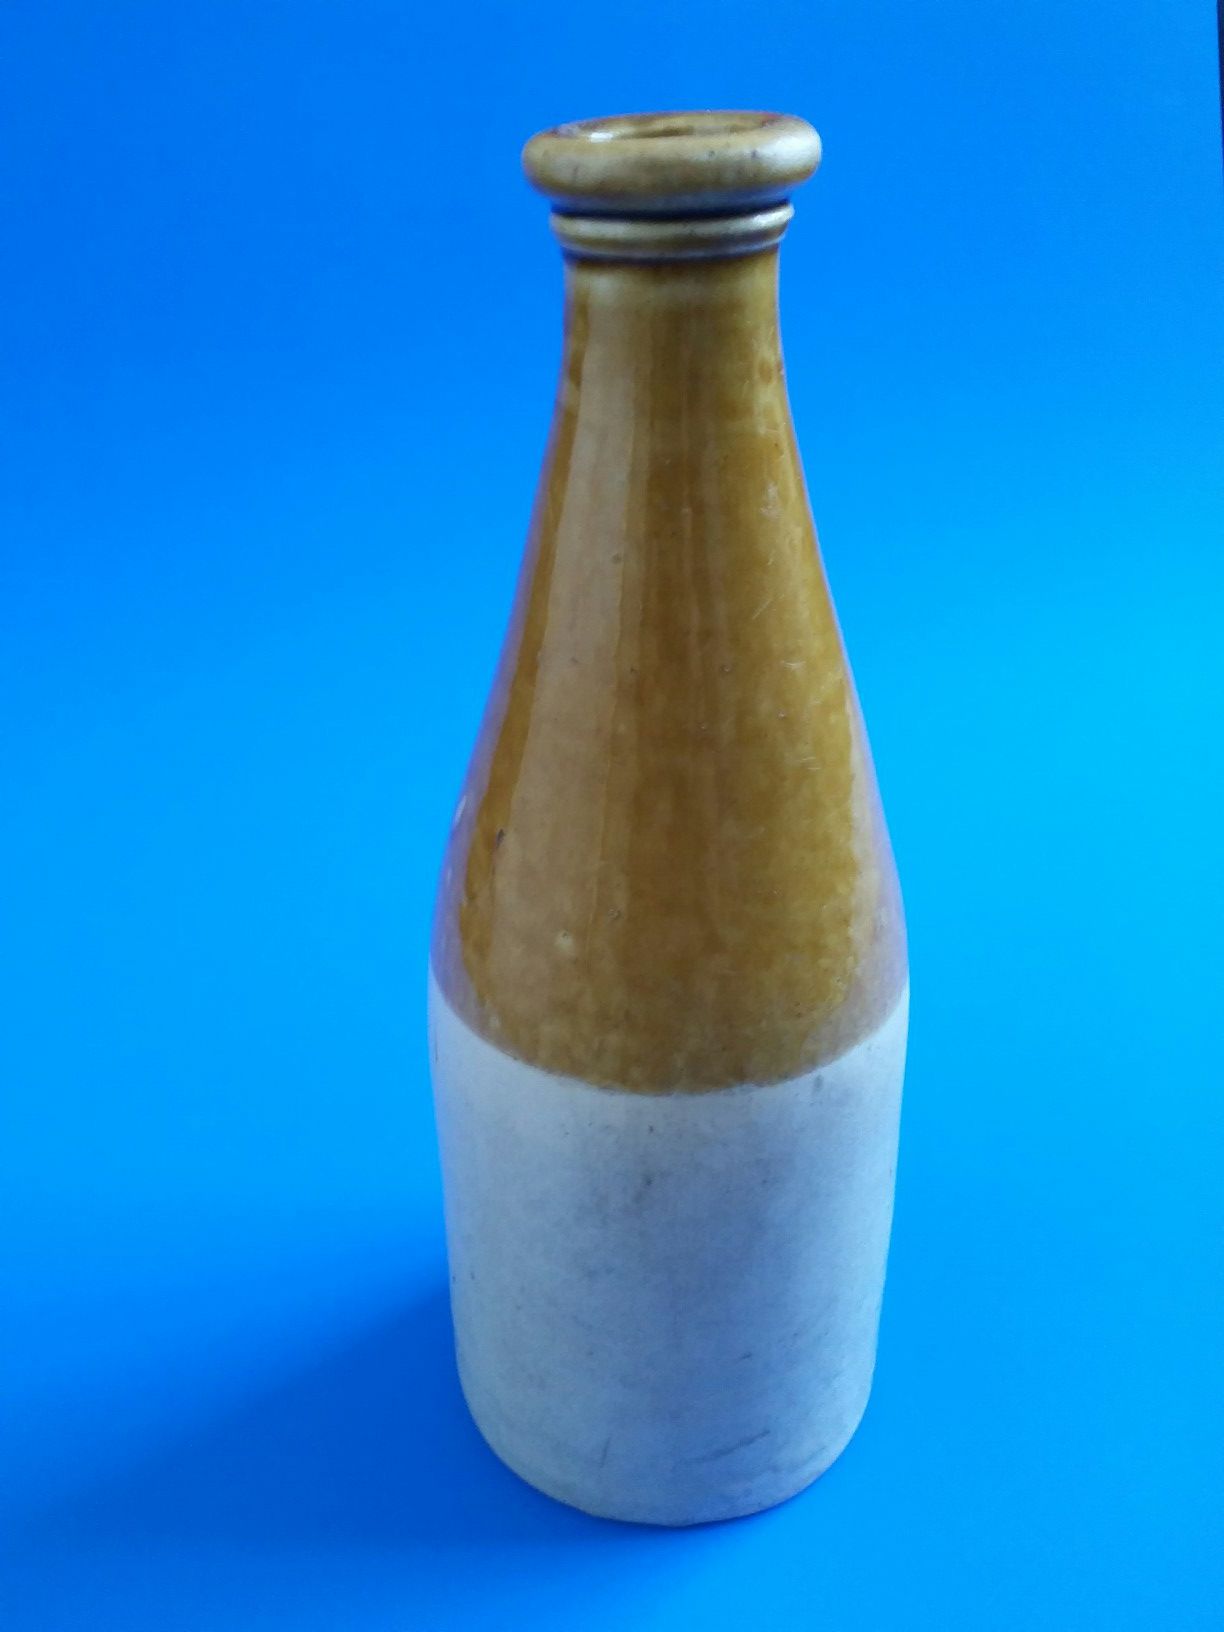 Antique Beer Bottle